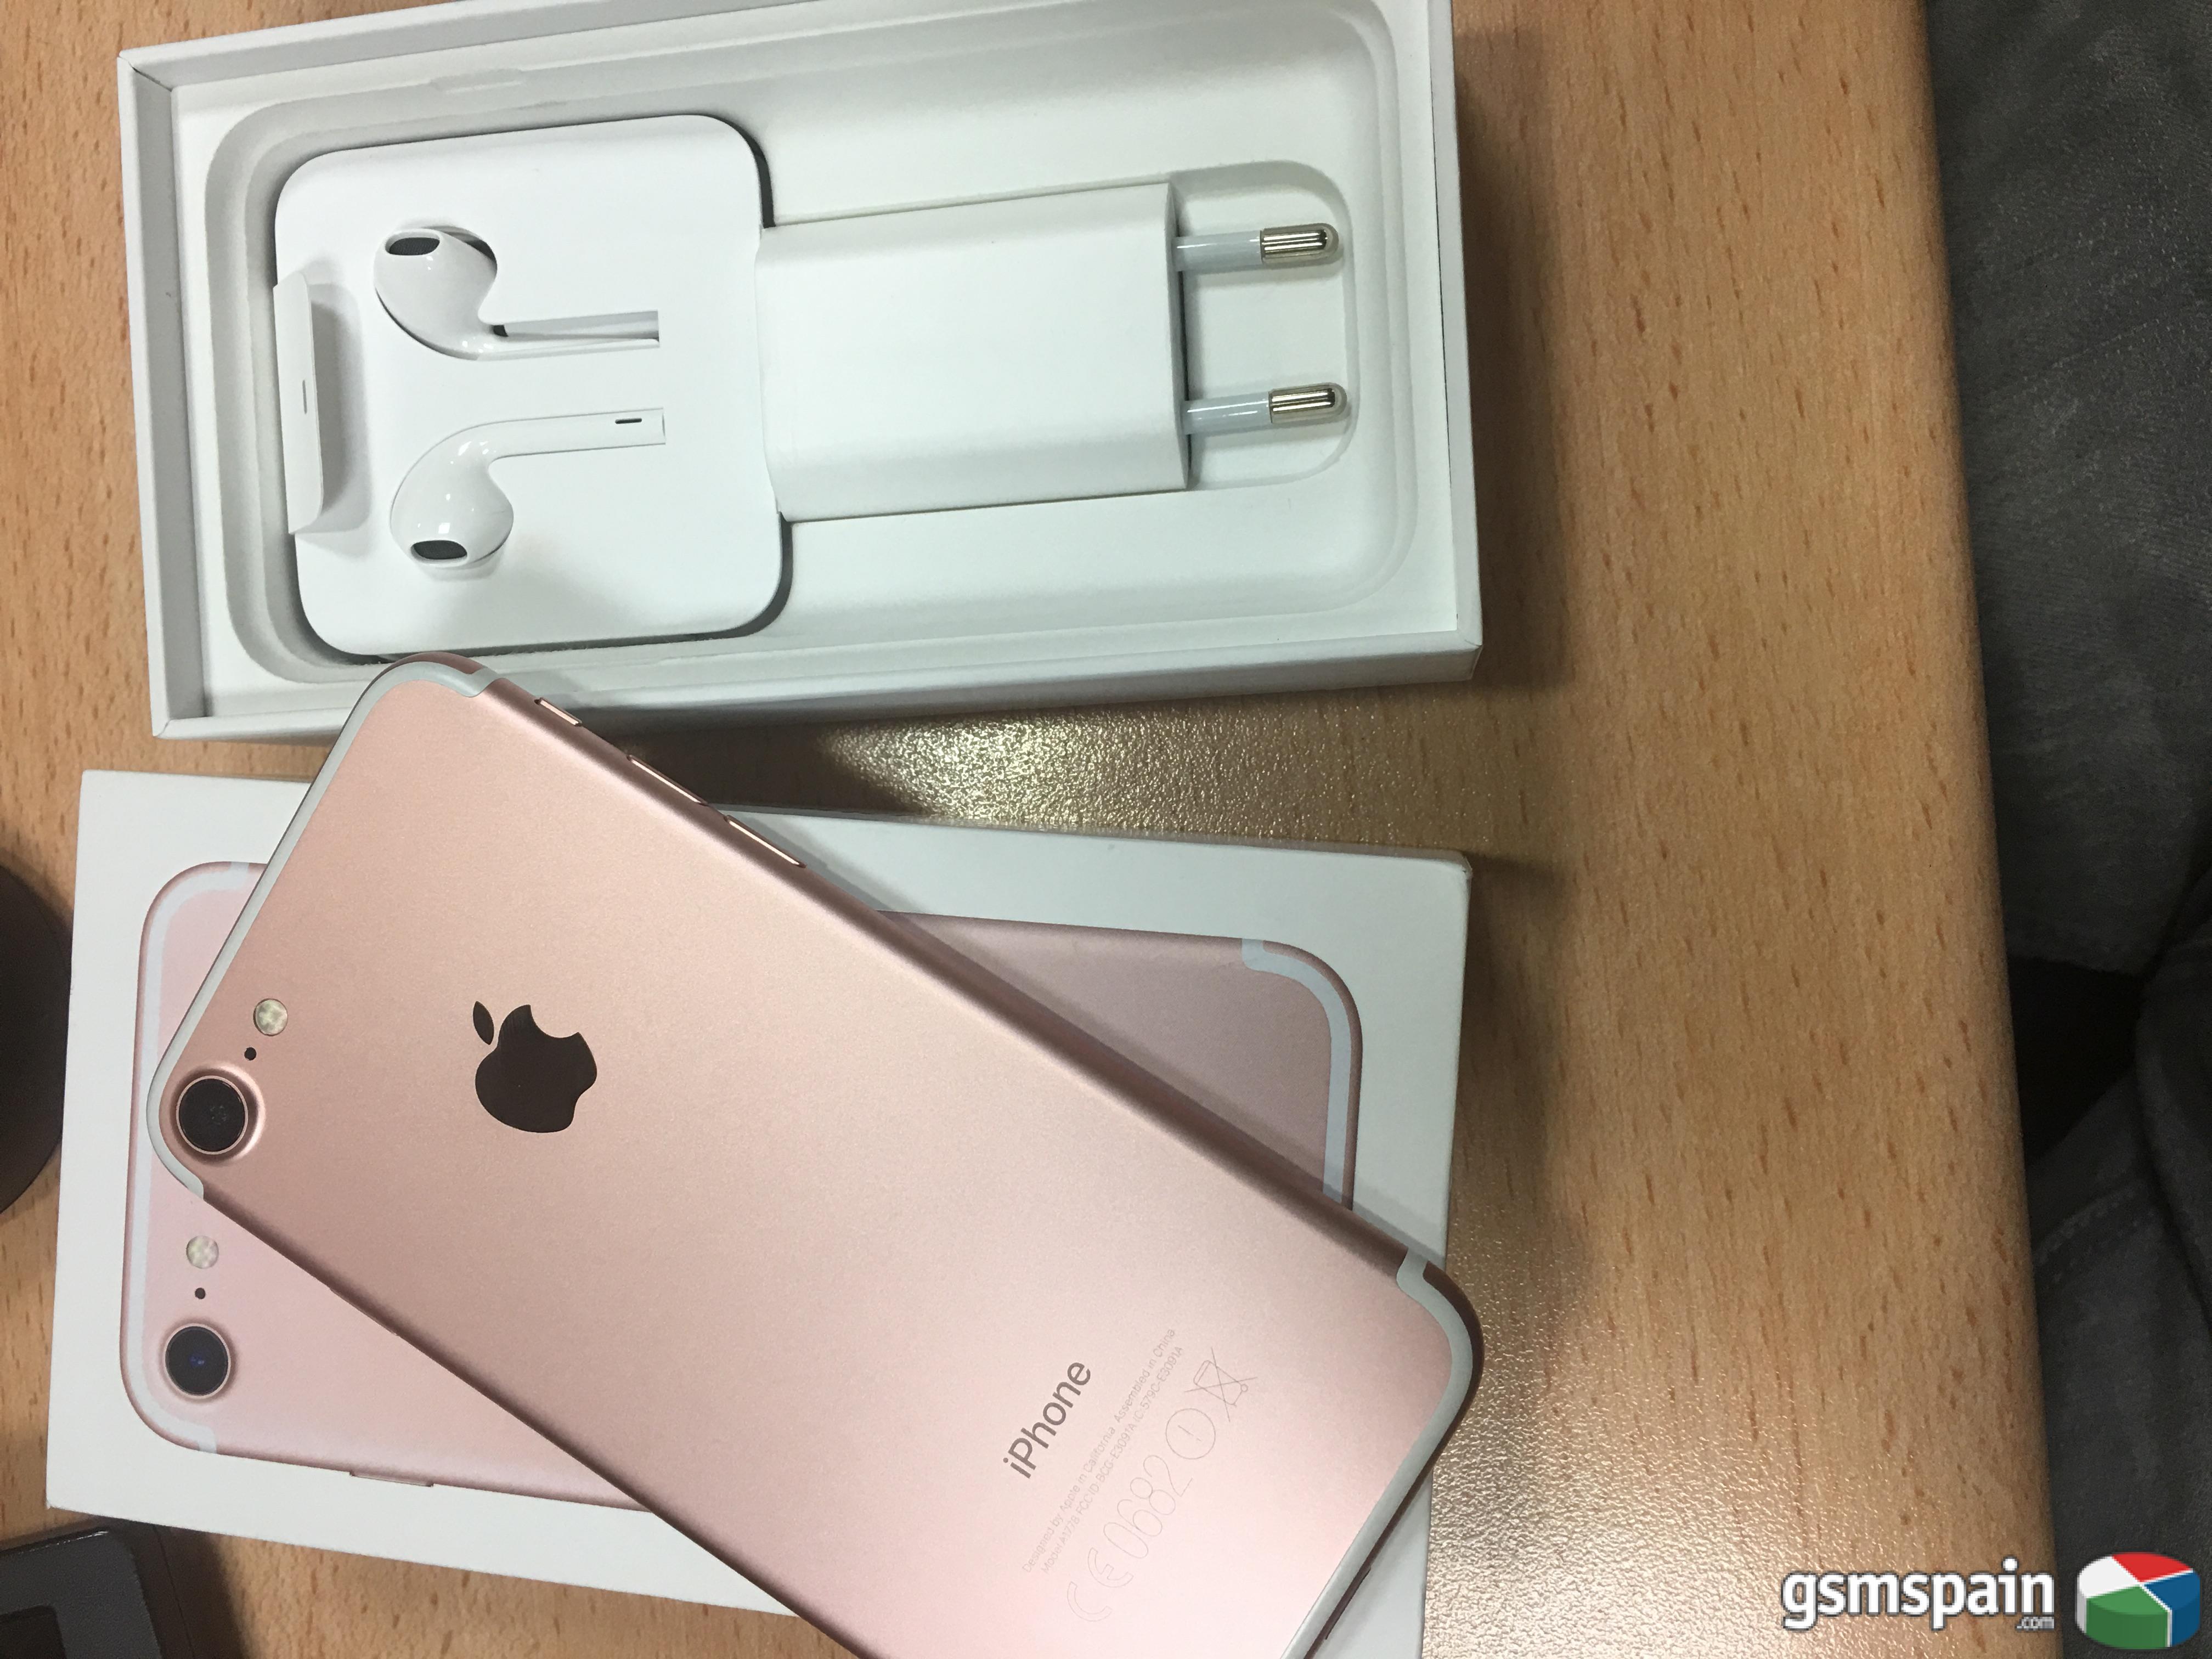 [VENDO] iPhone 7 128gb oro rosa nuevo